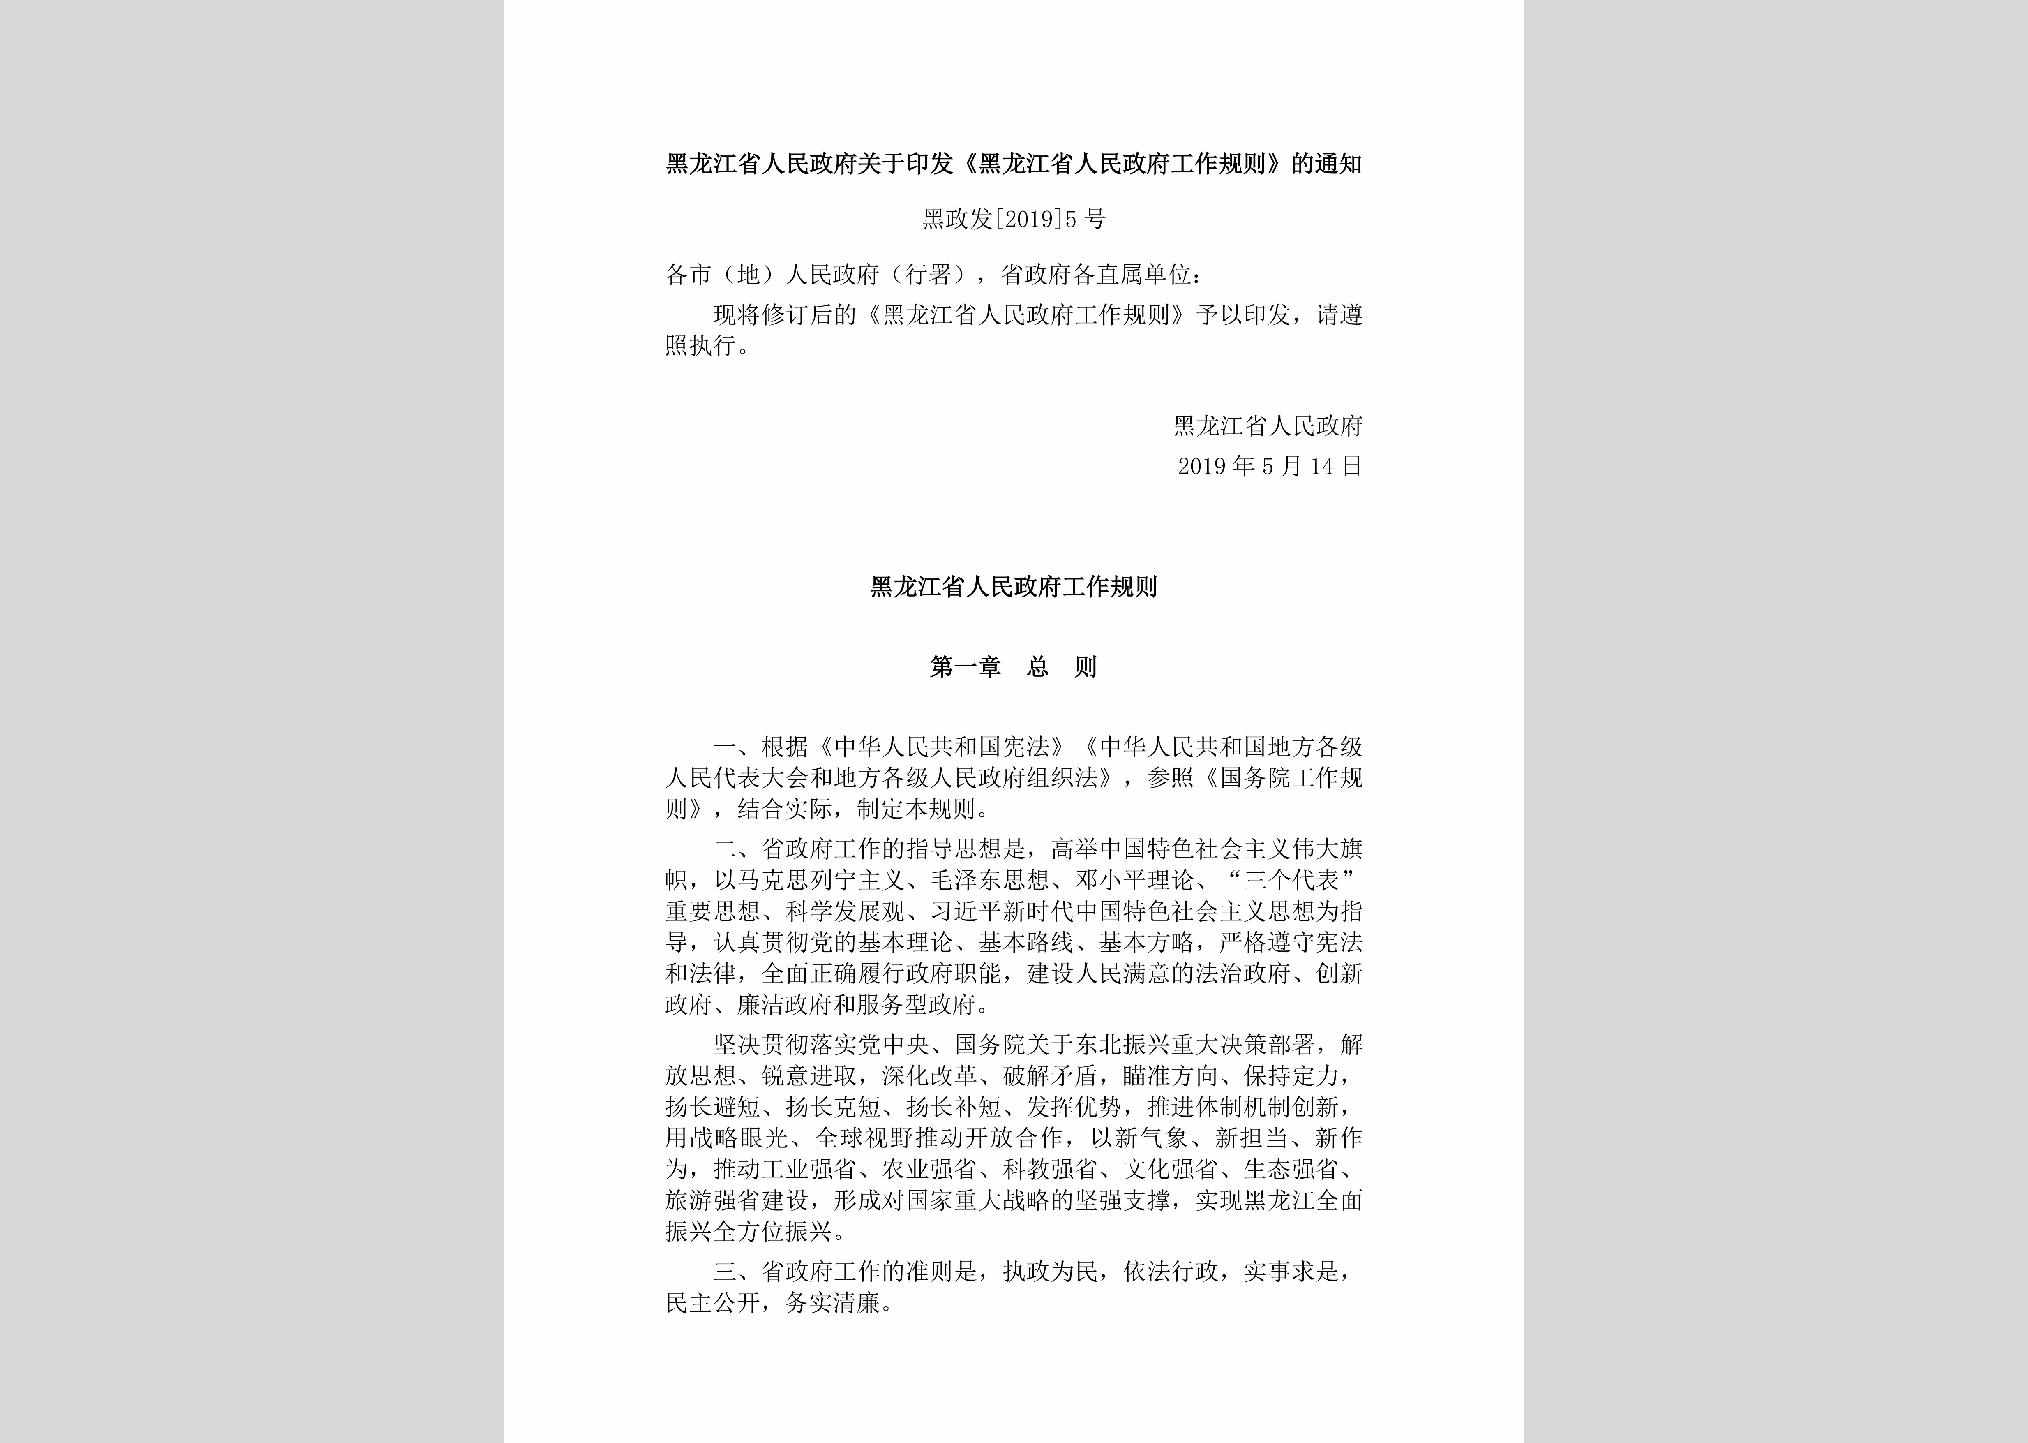 黑政发[2019]5号：黑龙江省人民政府关于印发《黑龙江省人民政府工作规则》的通知